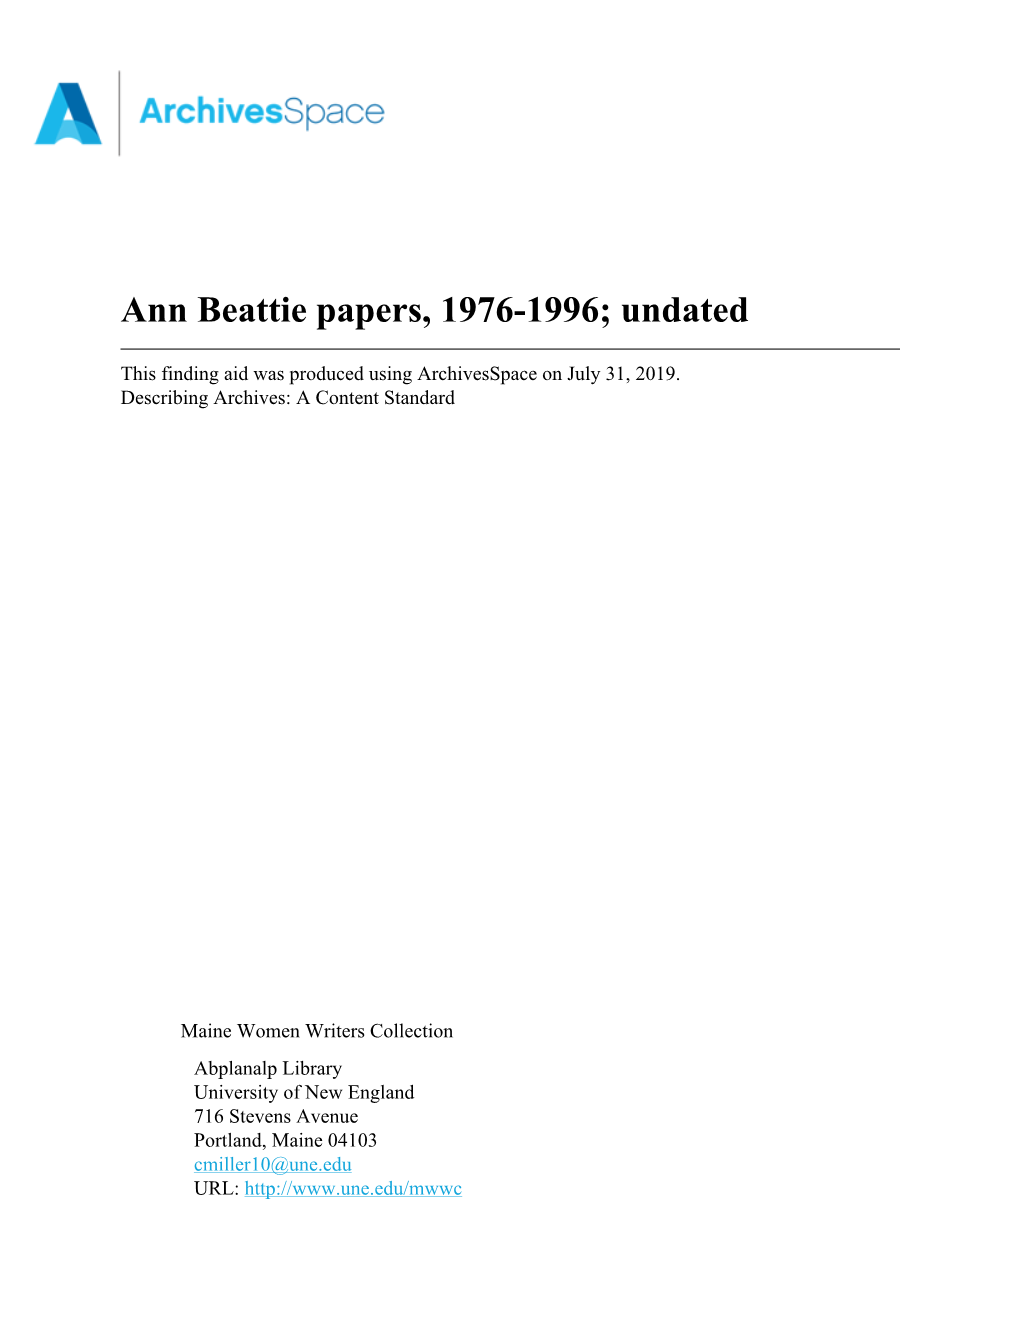 Ann Beattie Papers, 1976-1996; Undated